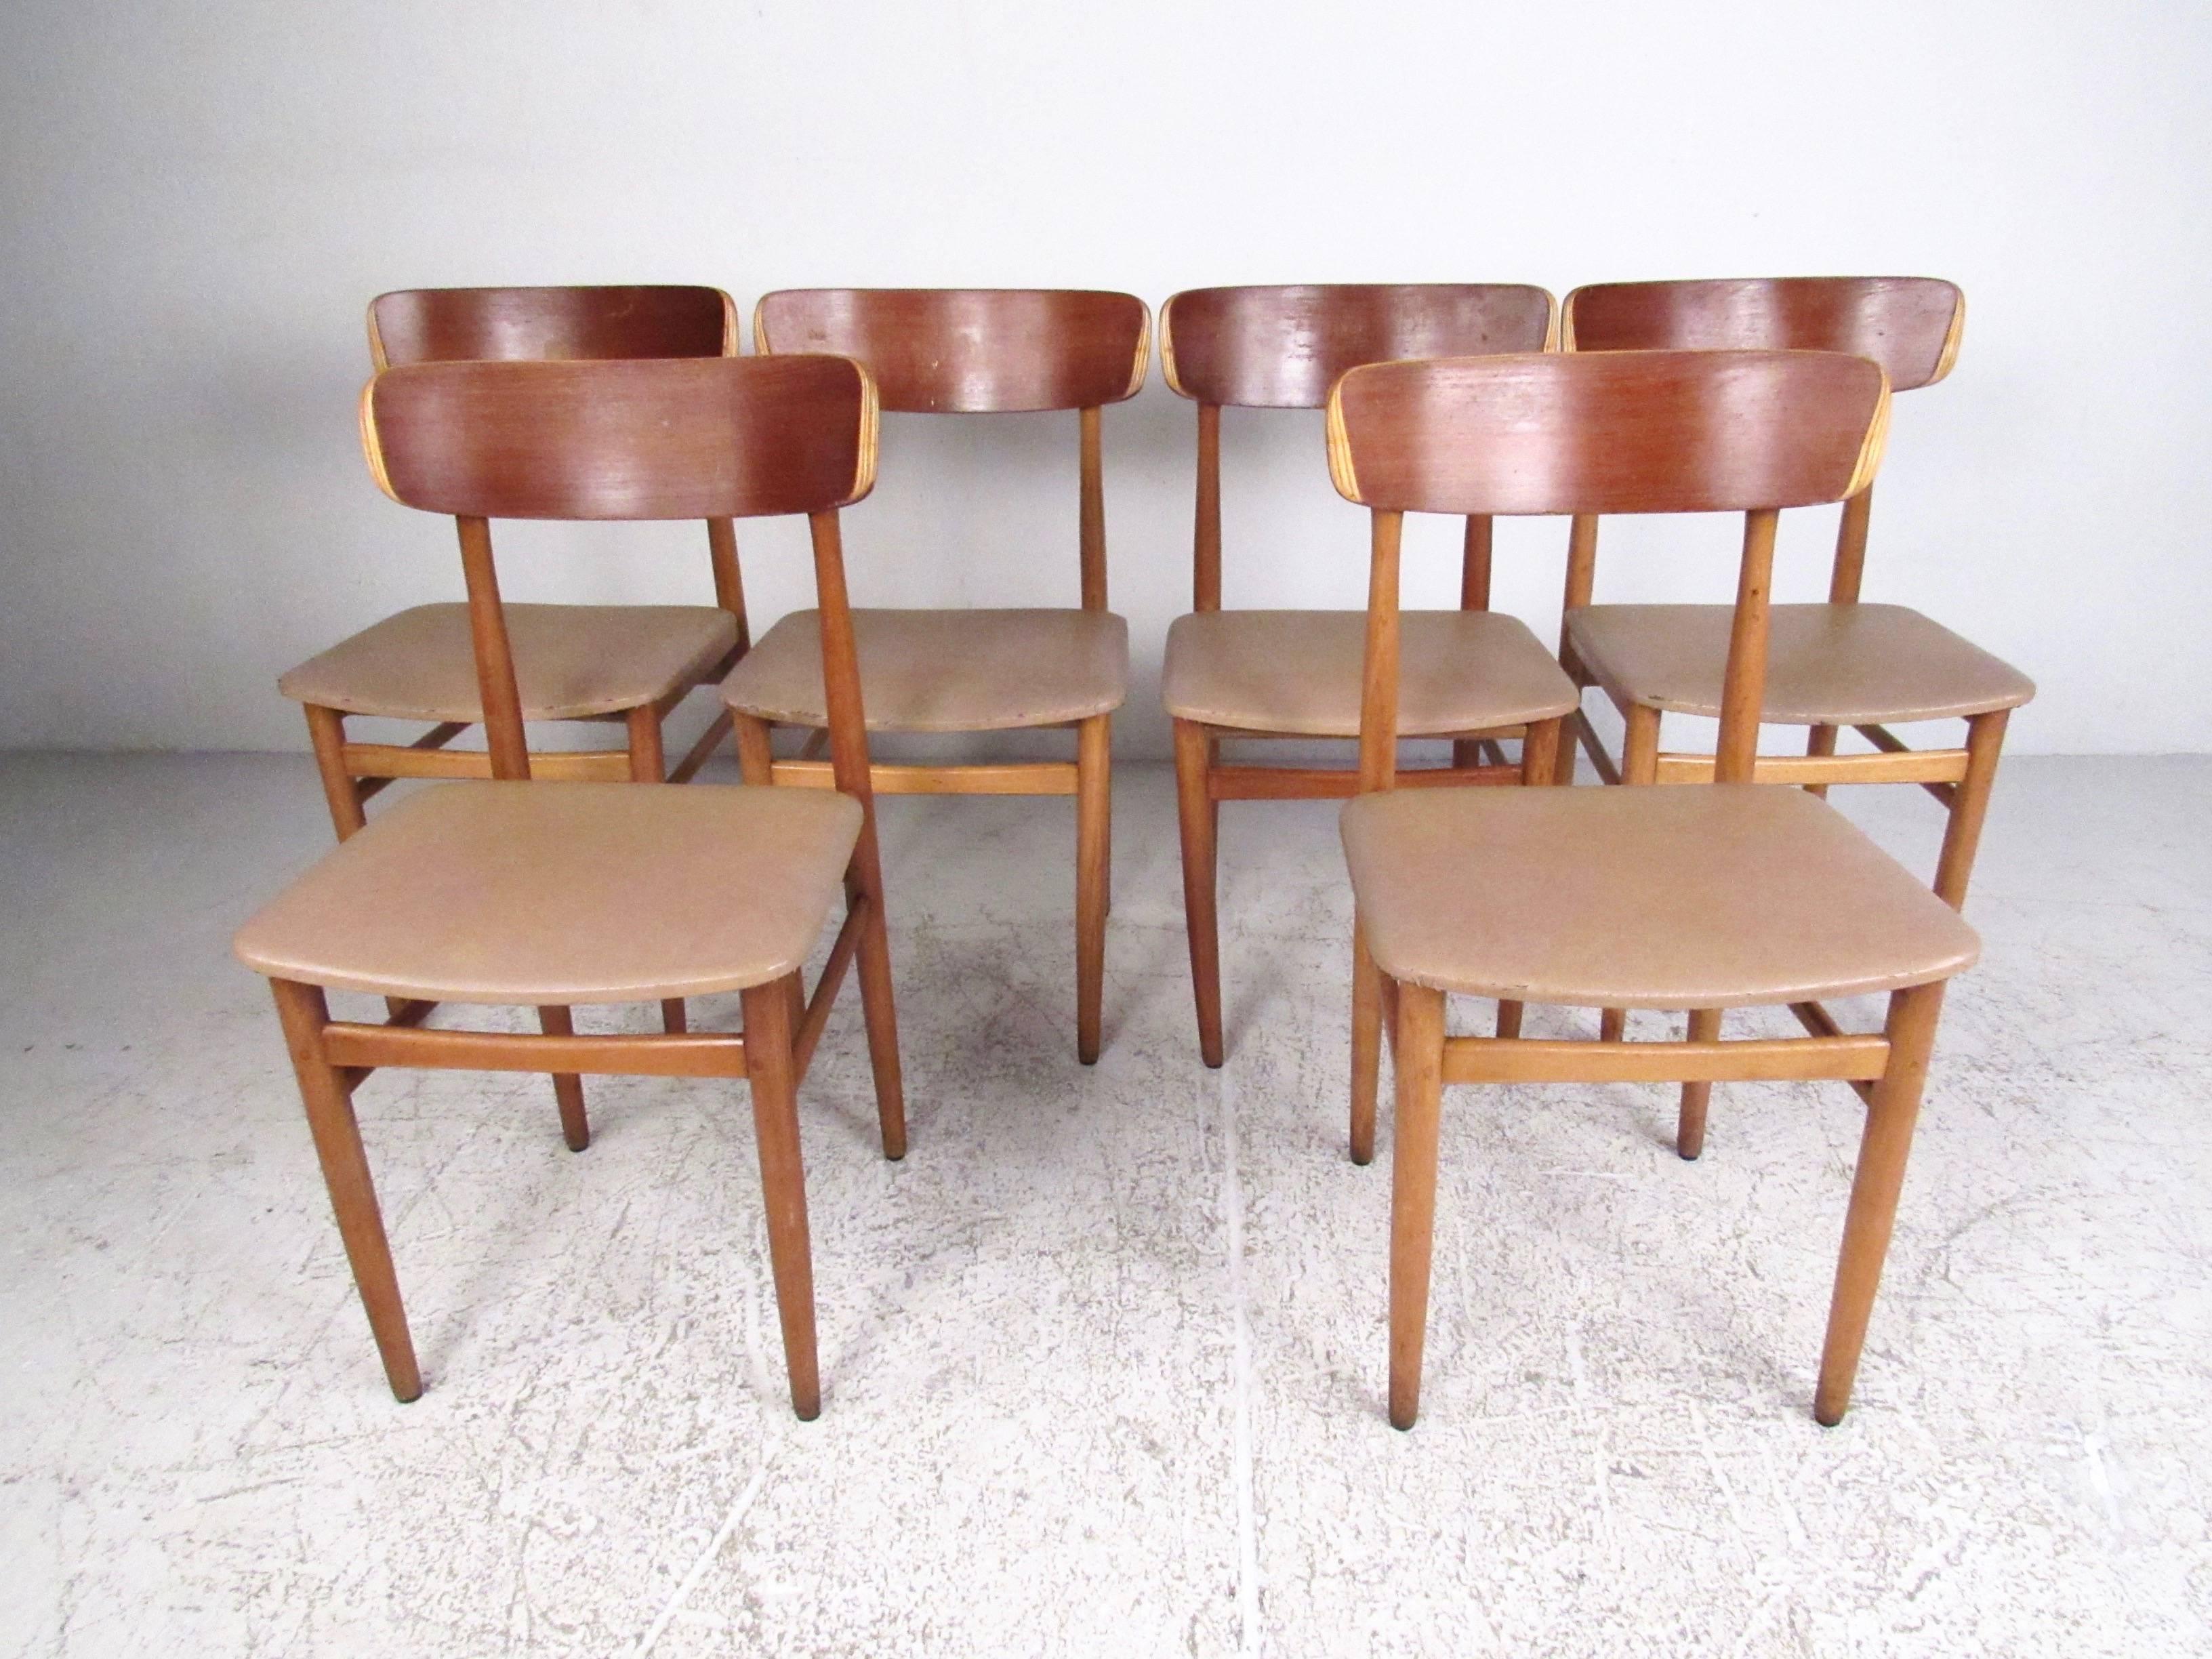 Cet ensemble élégant de chaises de salle à manger de style scandinave se caractérise par des sièges en vinyle, des châssis en bois dur et un design moderne et épuré. Les chaises midcentury, simples mais confortables, constituent un ajout unique à la